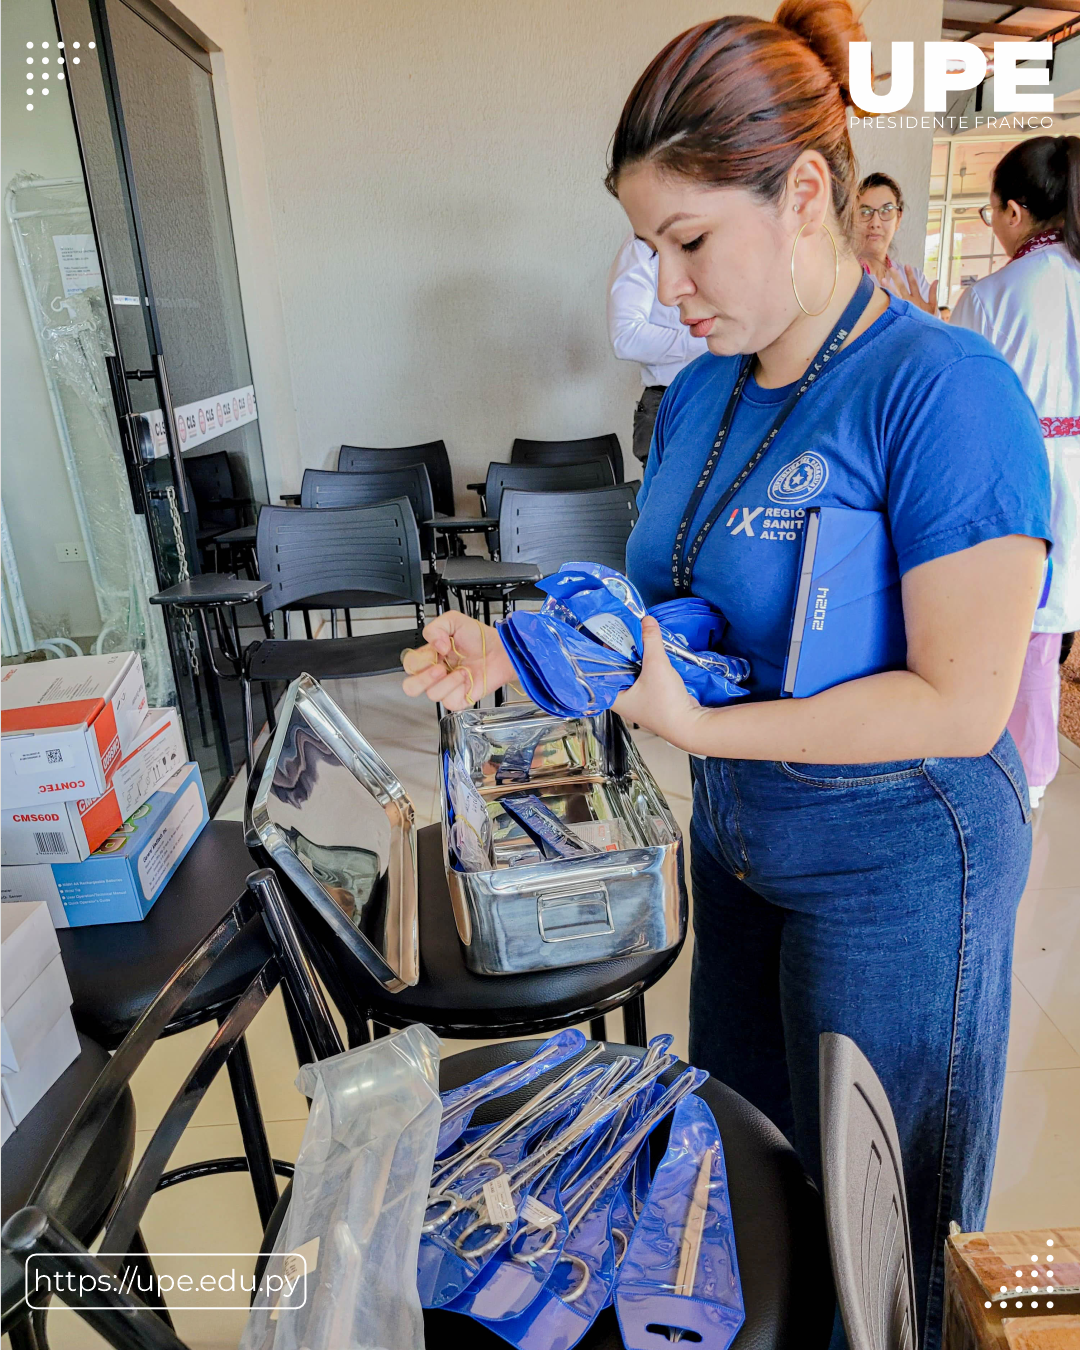 UPE entrega Contrapartida al Hospital Distrital de Hernandarias